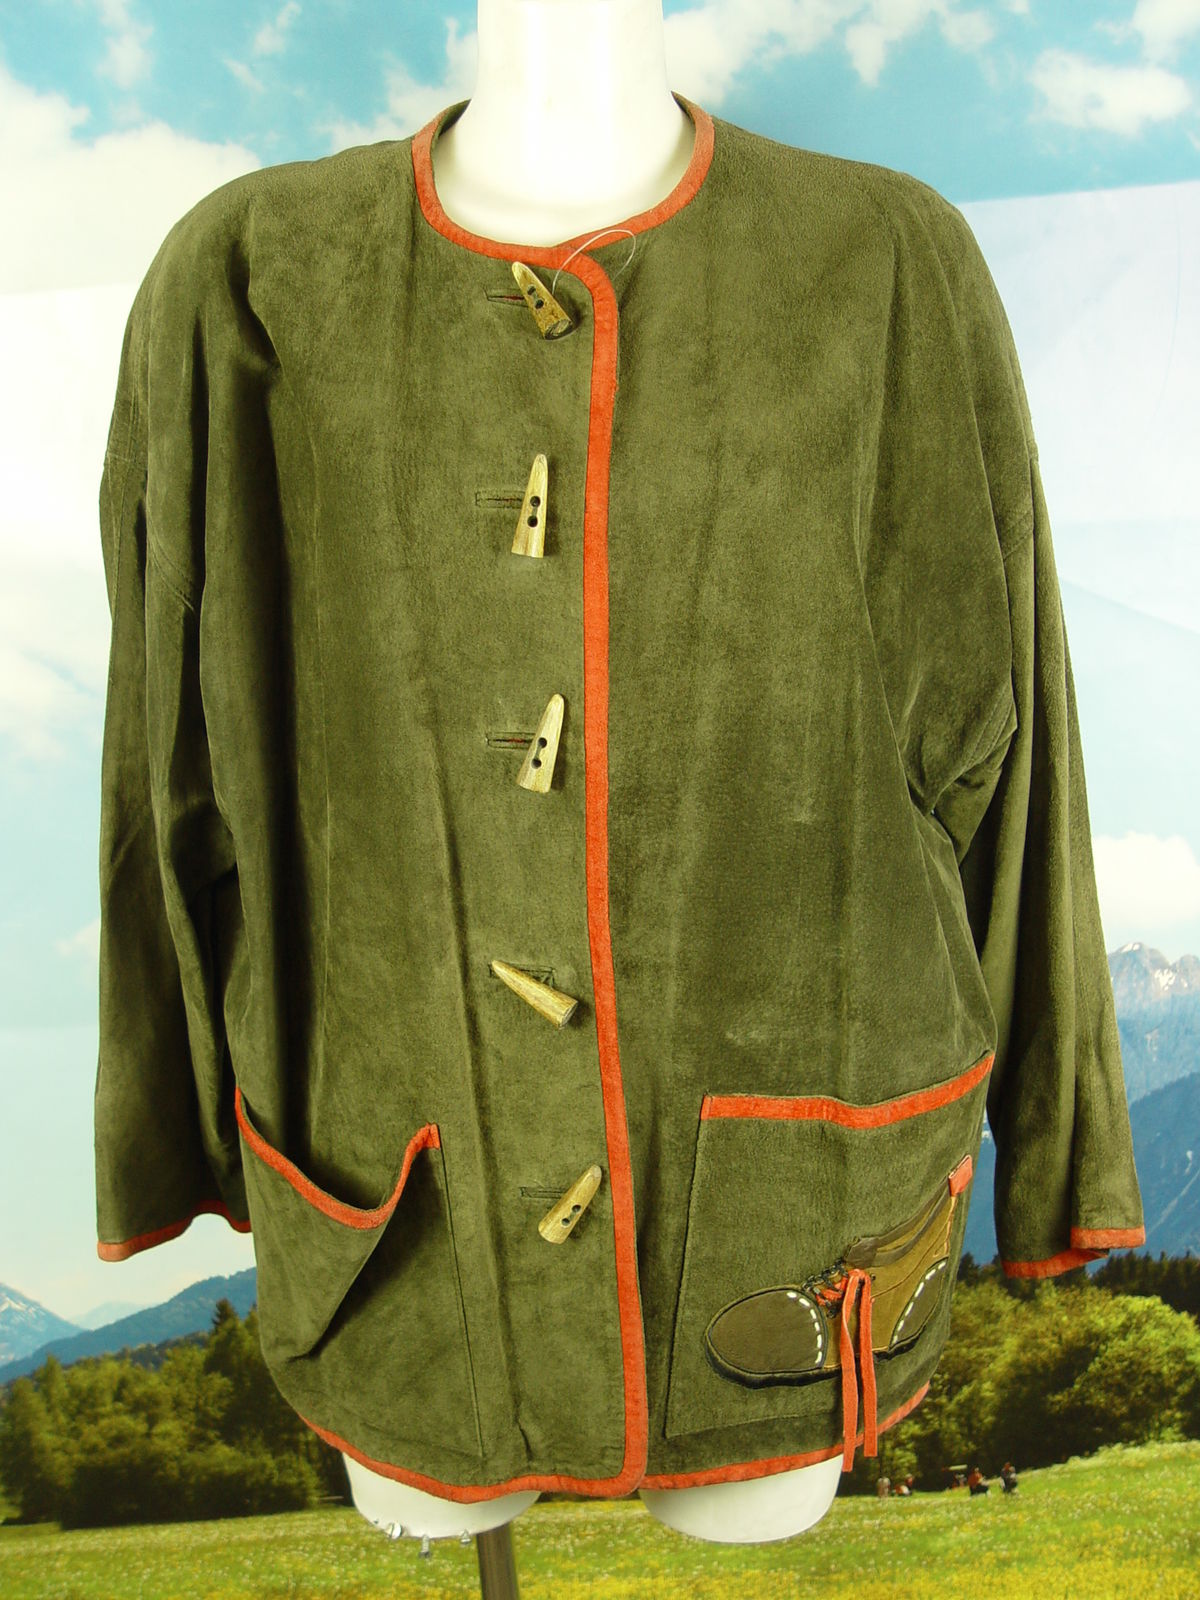 selten getragen in grün lange fesche Lederjacke Janker Trachten Jacke Gr.38